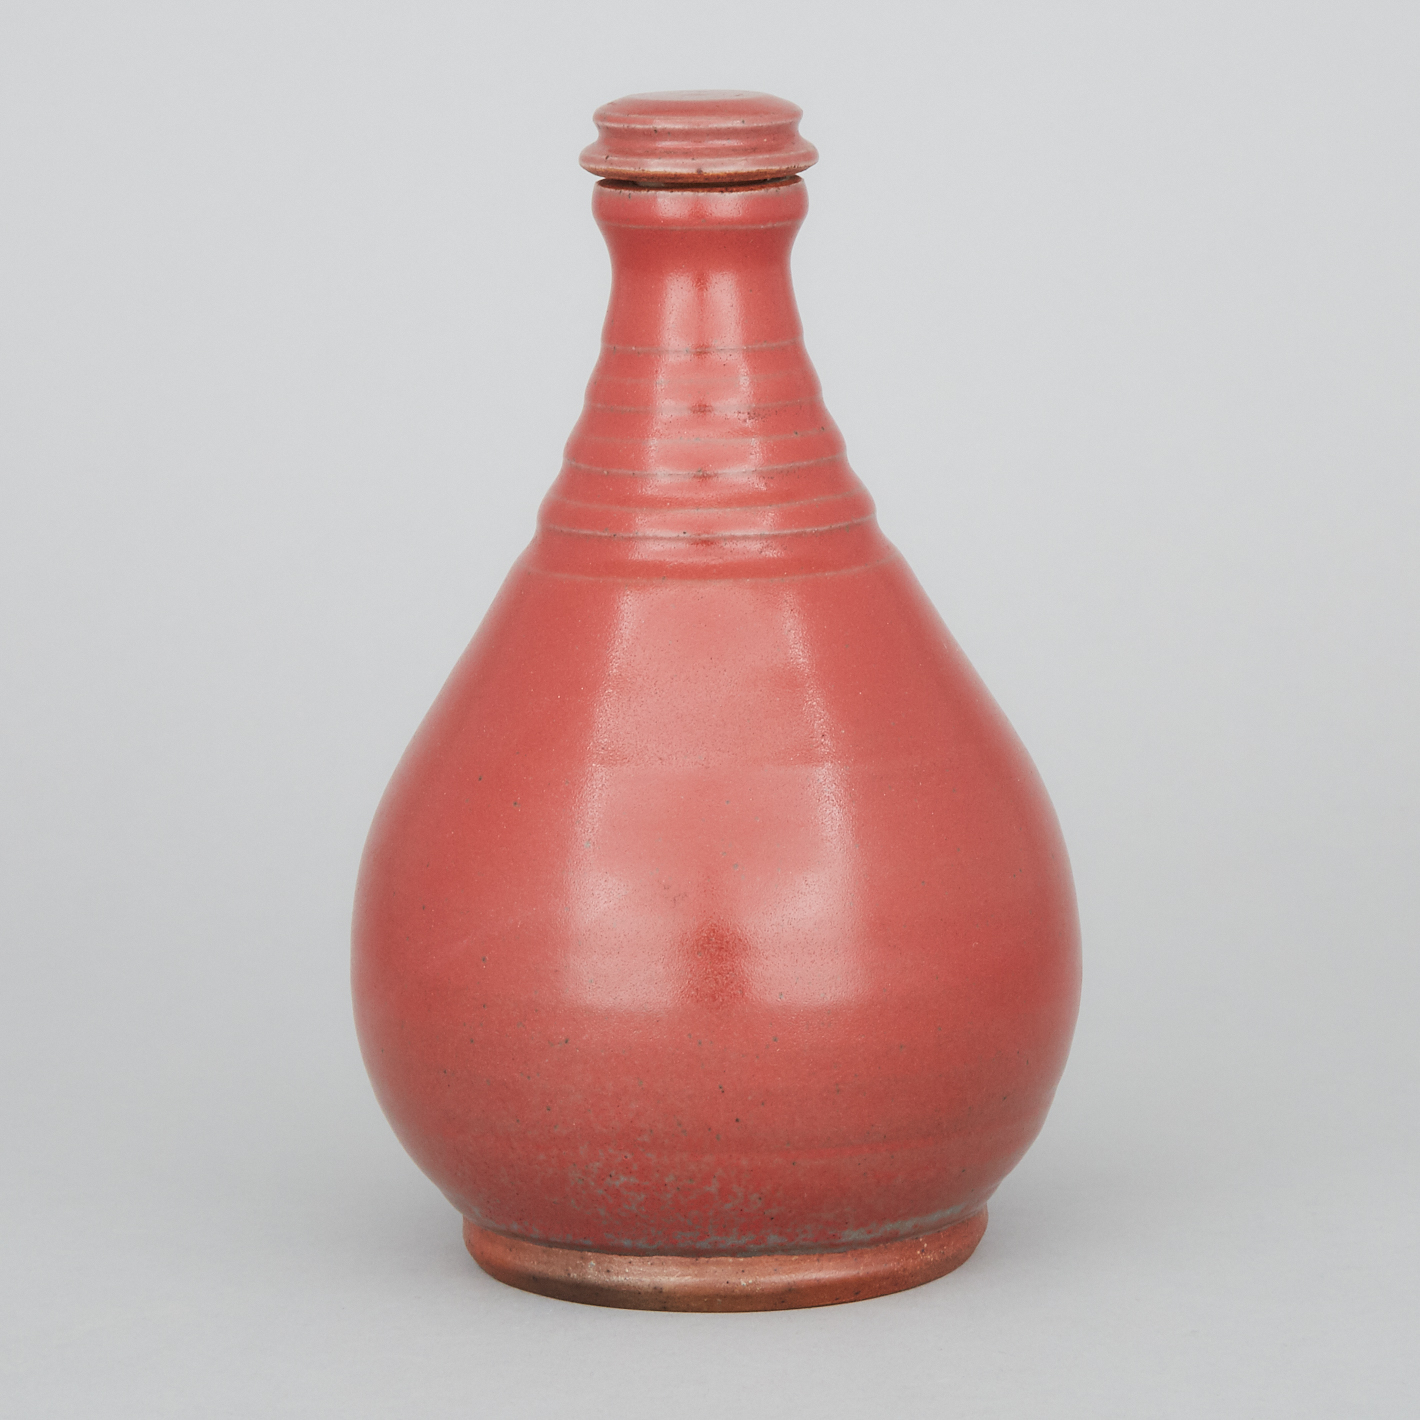 Kjeld & Erica Deichmann (Canadian, 1900–1963 and 1913–2007), Oxblood Glazed Bottle, 1940s